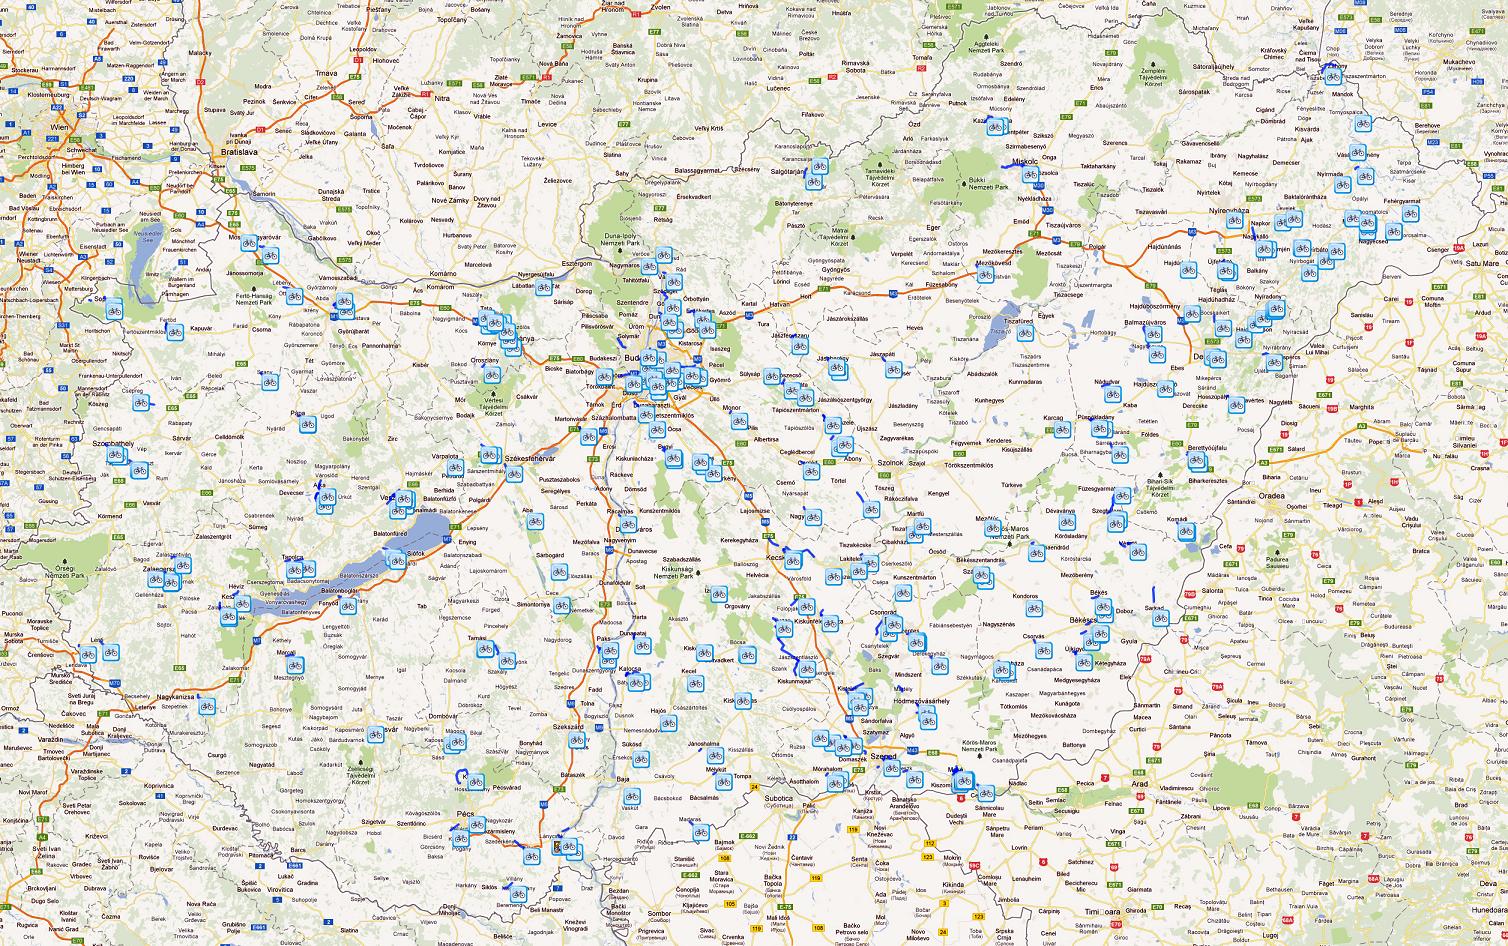 magyarország ut térkép Magyarország kerékpáros térképe   Biciklopédia magyarország ut térkép